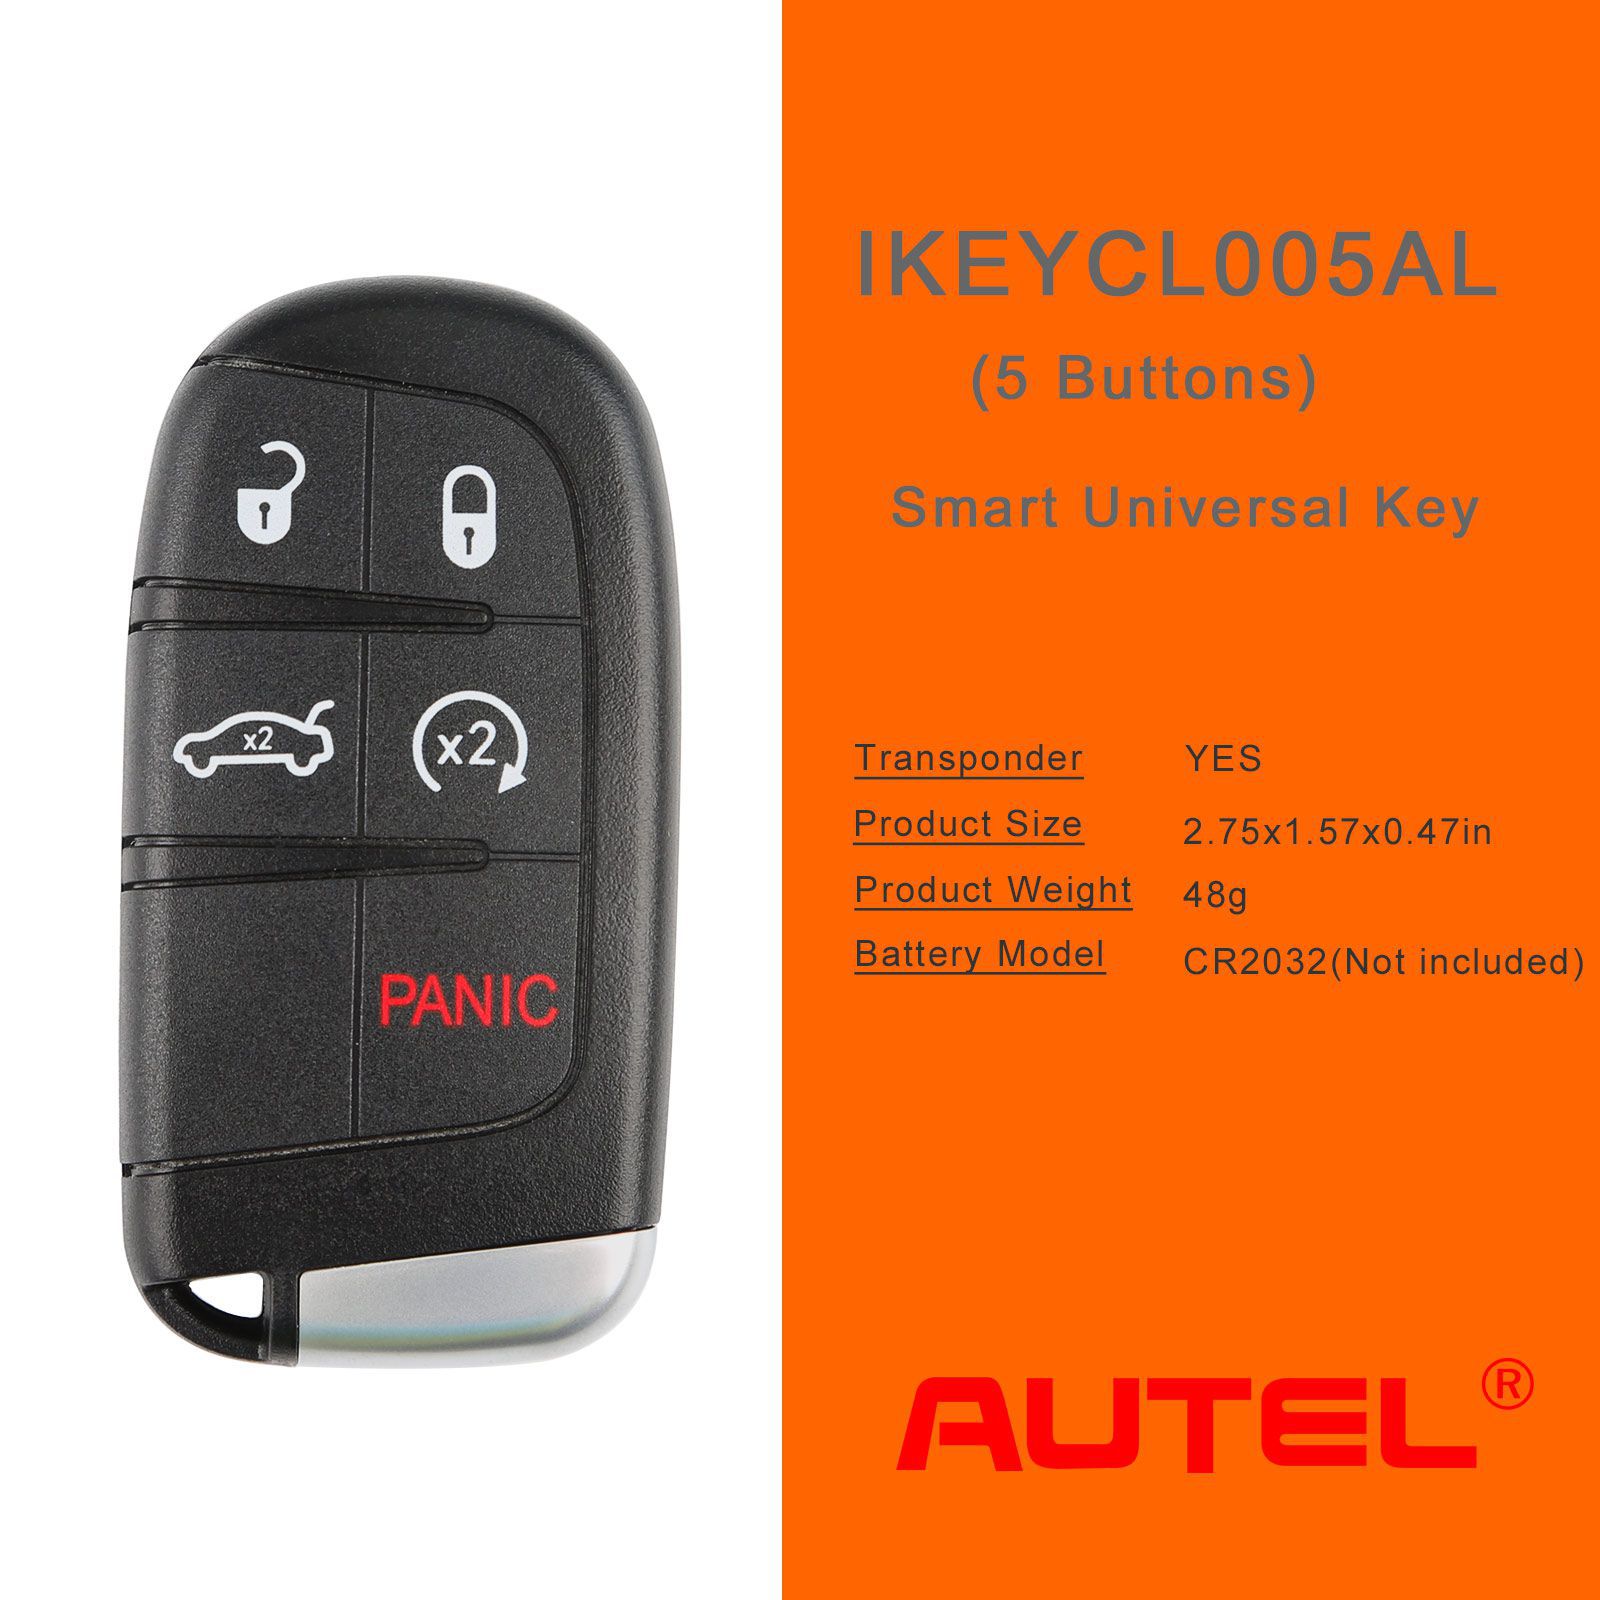 Autel ikeycl005al Chrysler 5 boutons clés intelligentes universelles 5pcs / lot